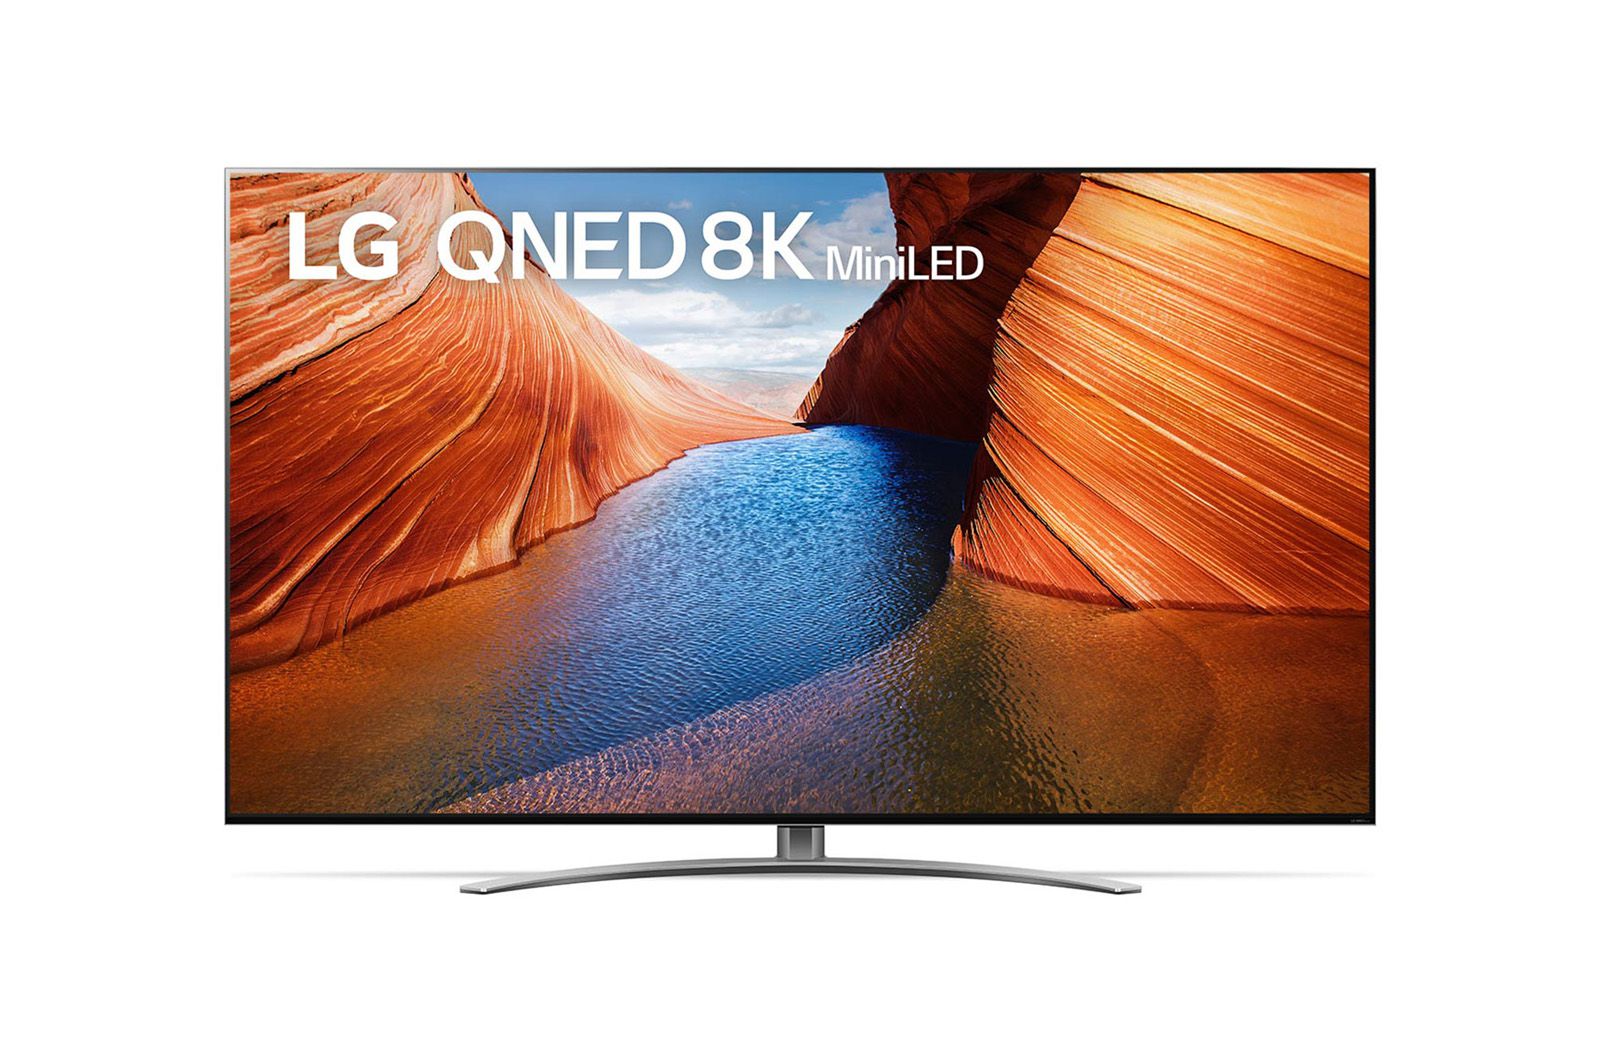 LG Tivi LG QNED99 86 inch 8K Smart TV Màn hình lớn | 86QNED99, 86QNED99SQB